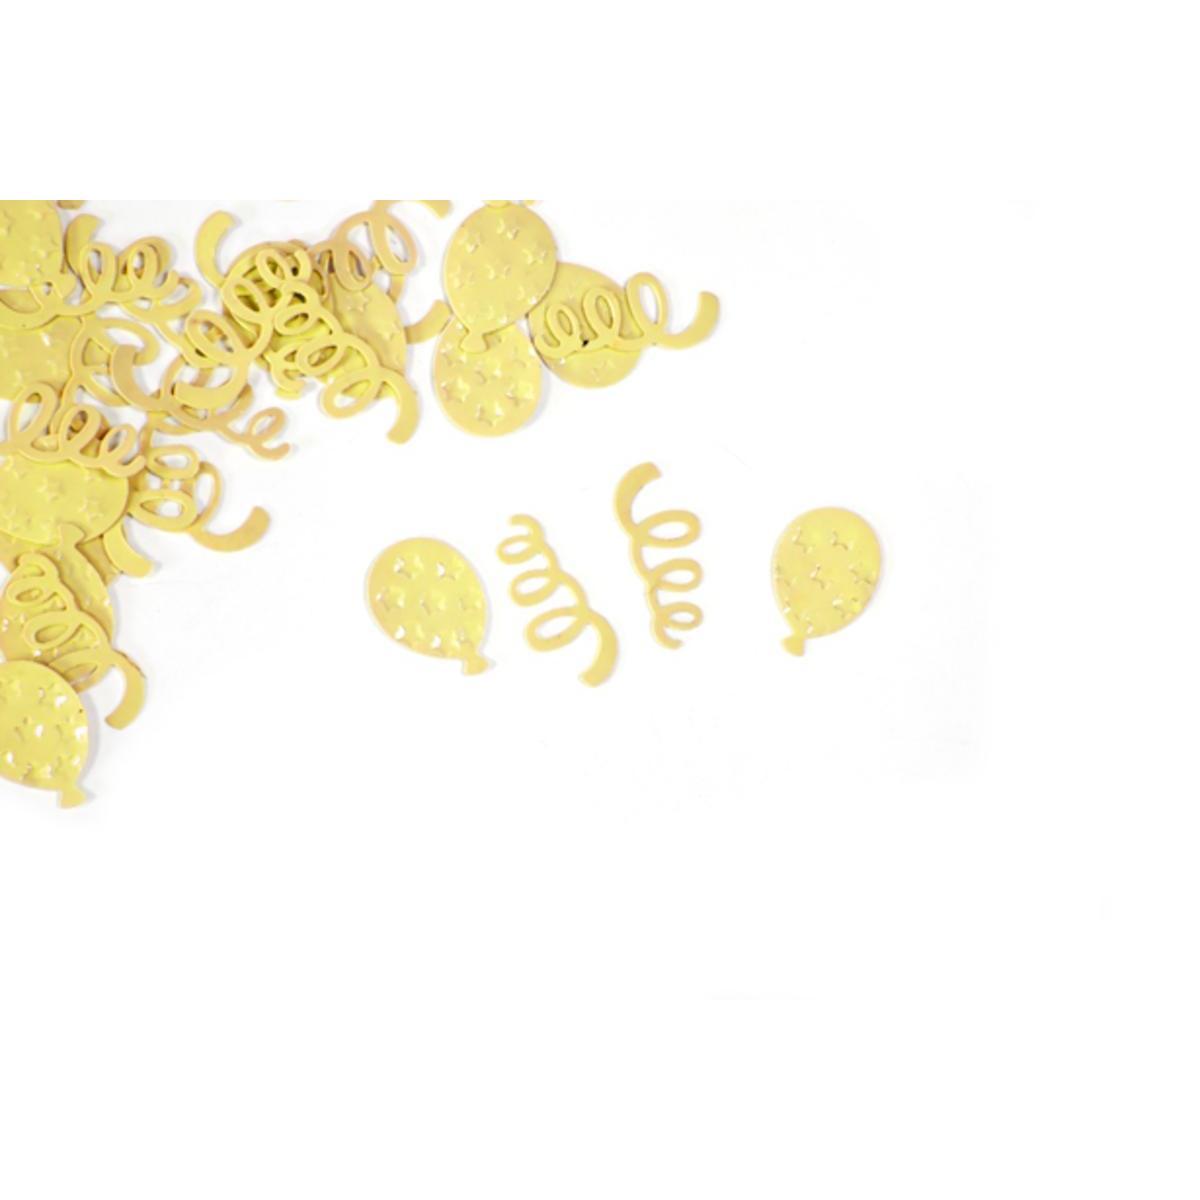 Confetti de table ballon serpentin (10 g) - 0.8 x 2 cm - Jaune